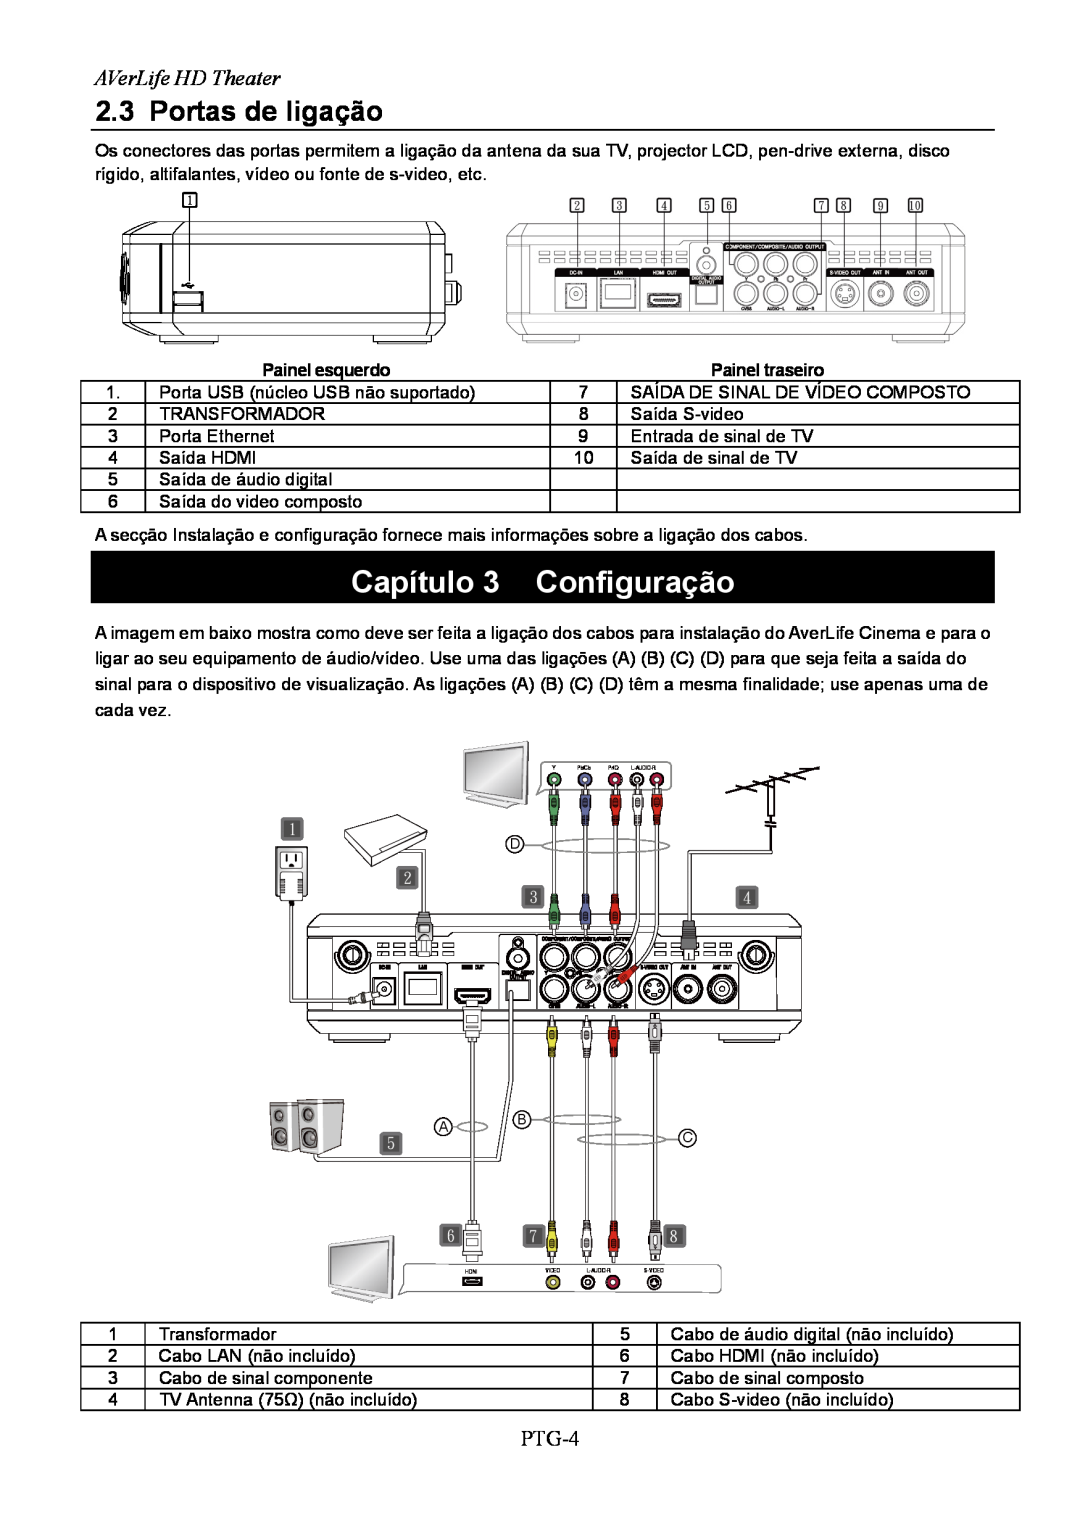 AVerMedia Technologies A211 user manual Capítulo 3 Configuração, Portas de ligação, AVerLife HD Theater, PTG-4 